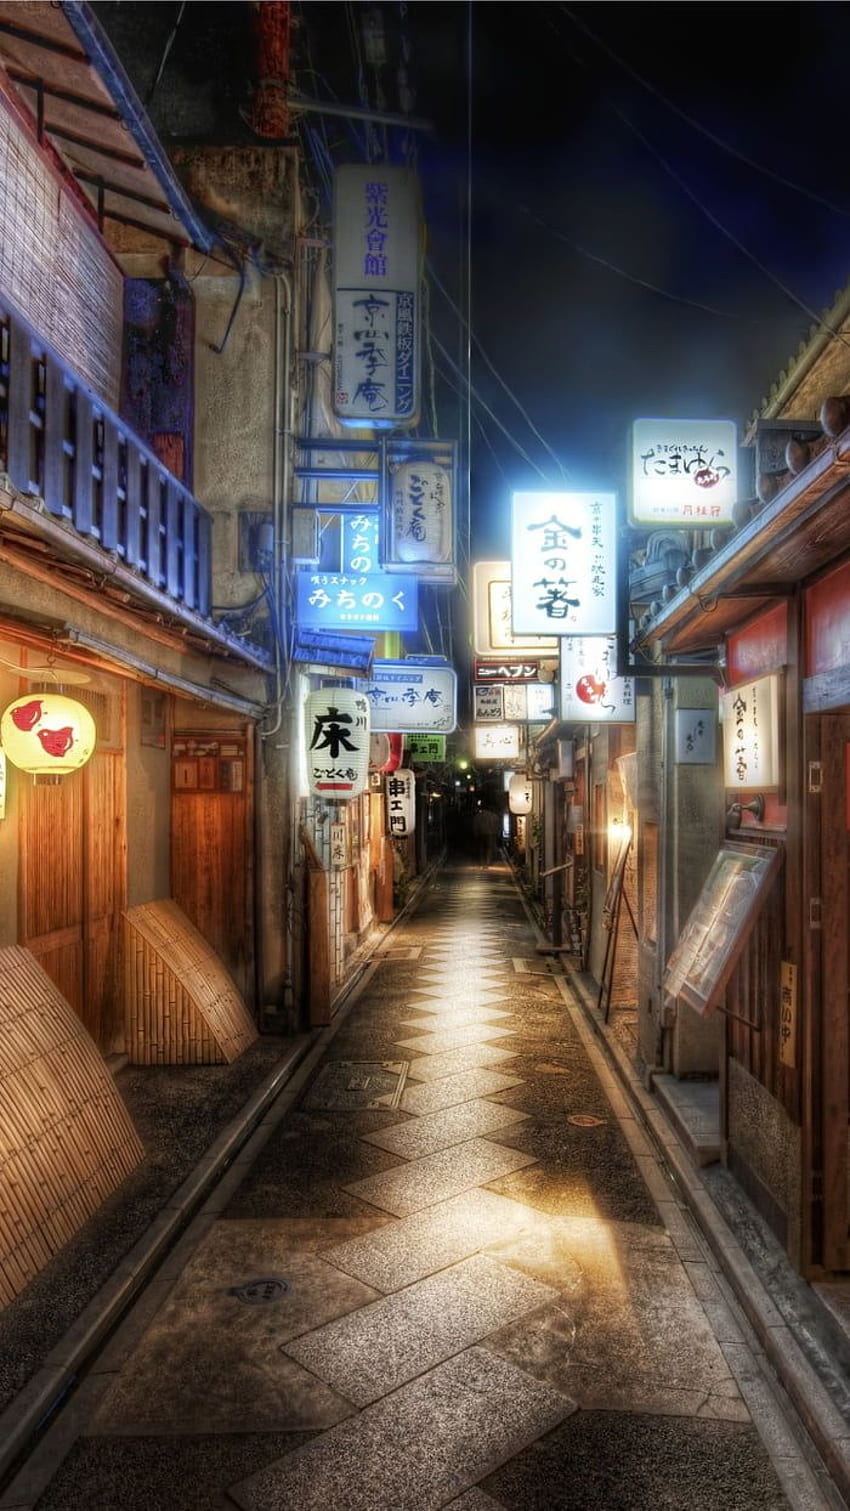 Đừng bỏ lỡ cơ hội khám phá đường phố đêm Nhật Bản tuyệt đẹp thông qua bức ảnh này. Những cảnh sắc rực rỡ đầy sự náo nhiệt không chỉ khiến bạn mê mẩn mà còn khơi gợi những trí tưởng tượng đầy sáng tạo. 